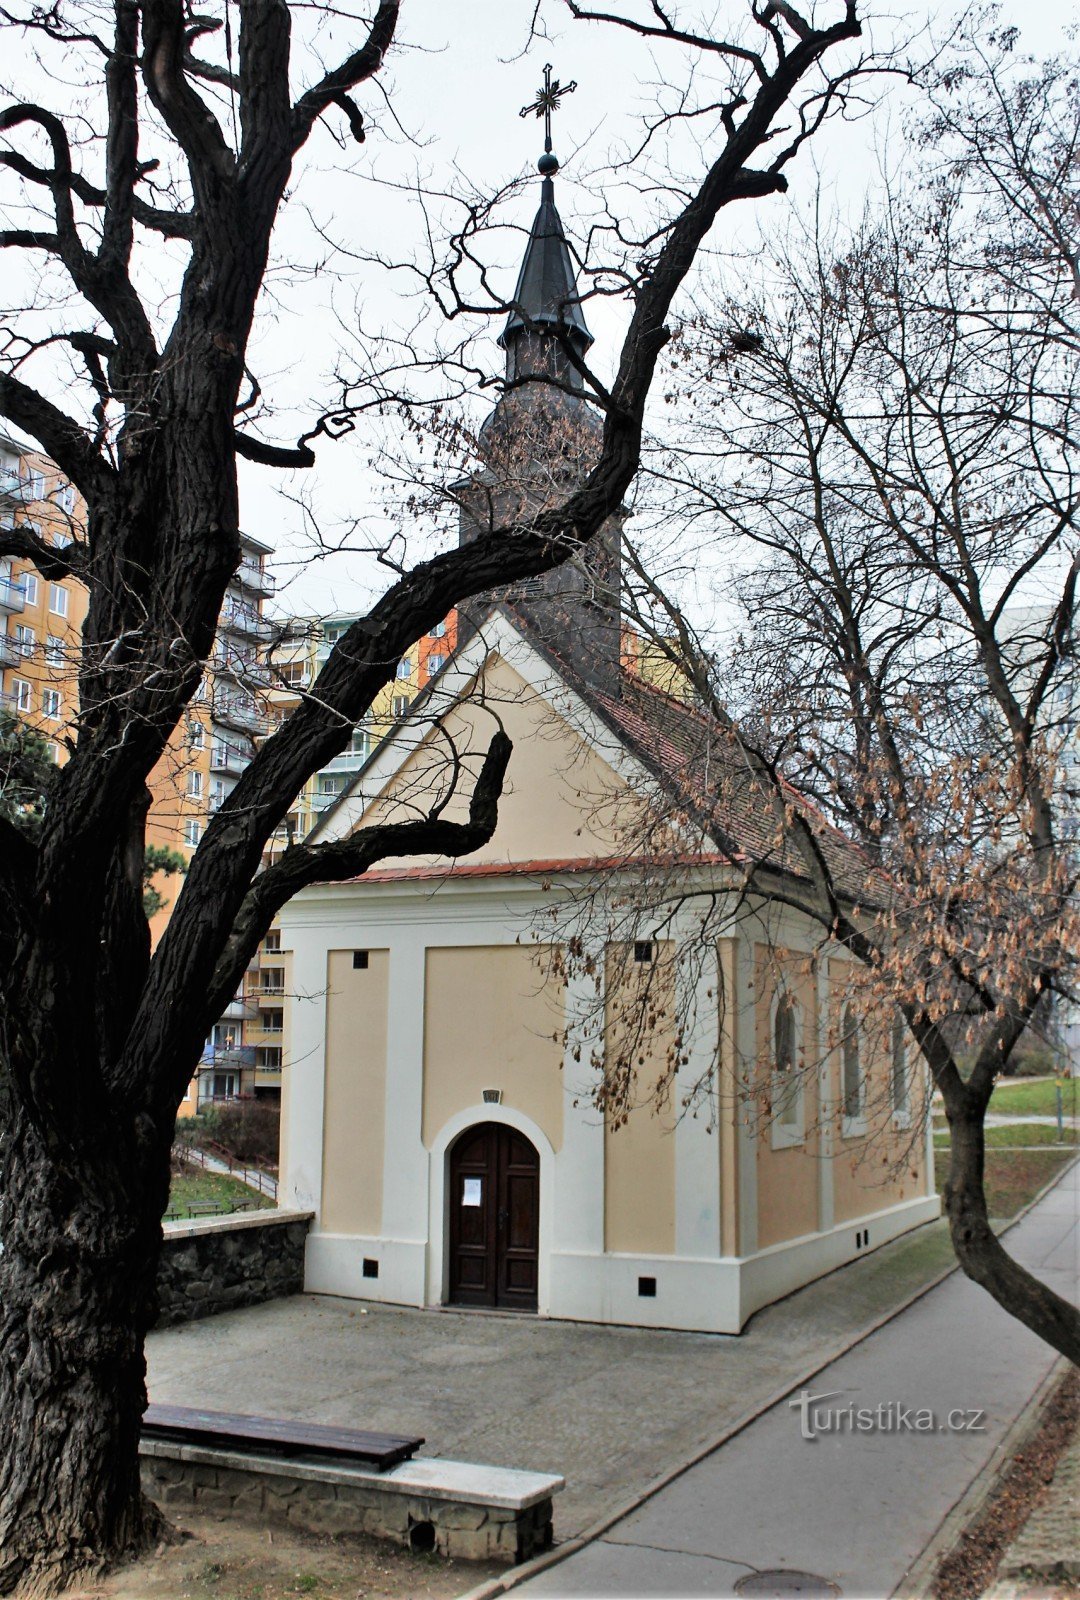 Brno-Bohunice - nhà nguyện của St. Cyril và Methodius